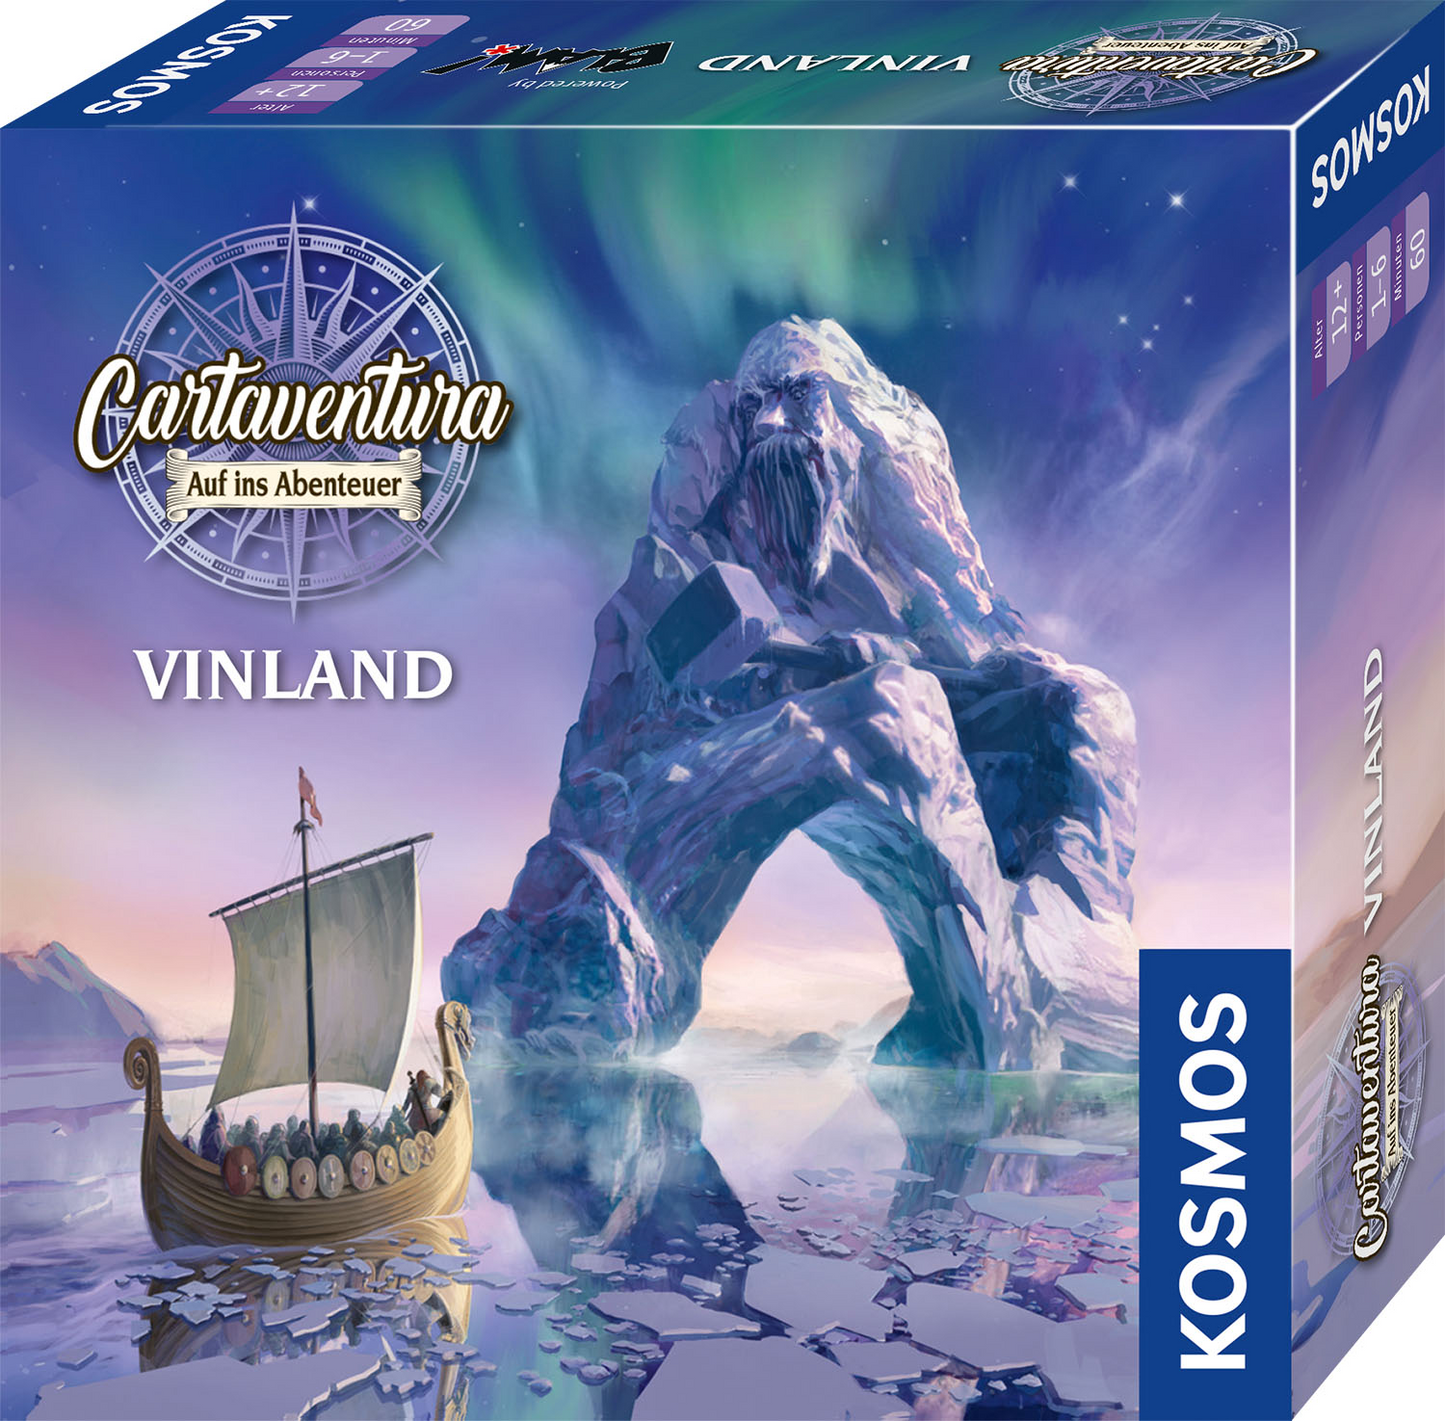 Cartaventura Vinland Auf ins Abenteuer Vanellas Spielewelt